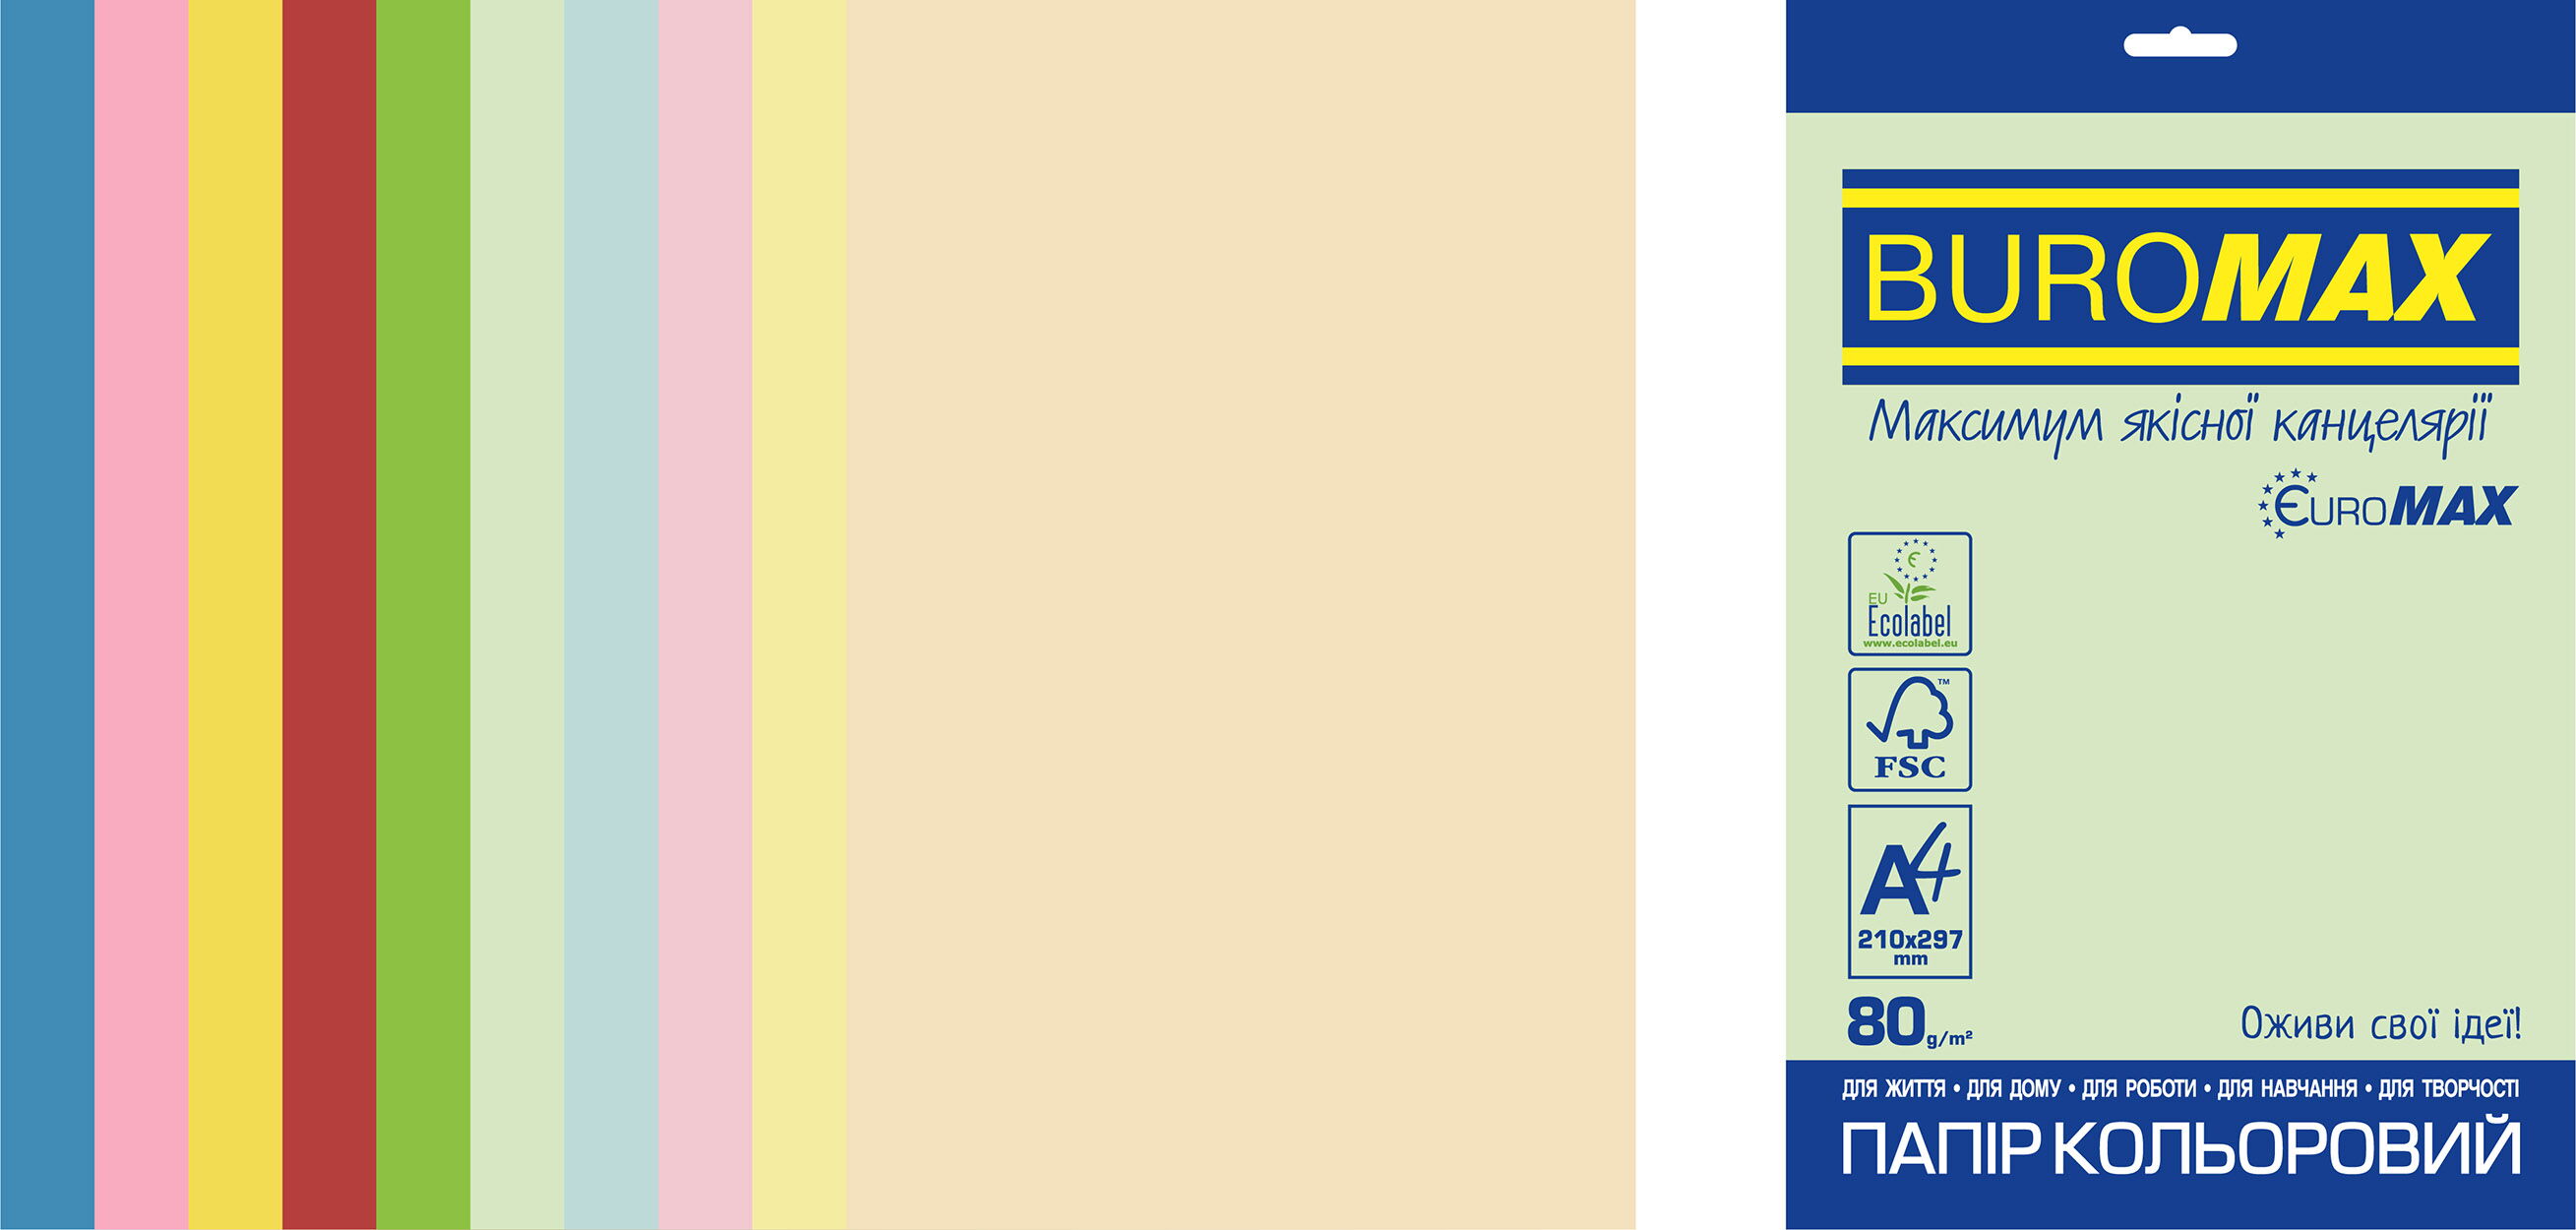 Набор цветной бумаги Buromax PASTEL+INTENSIVE EUROMAX, 80 г/м2, 20 листов, ассорти - №1